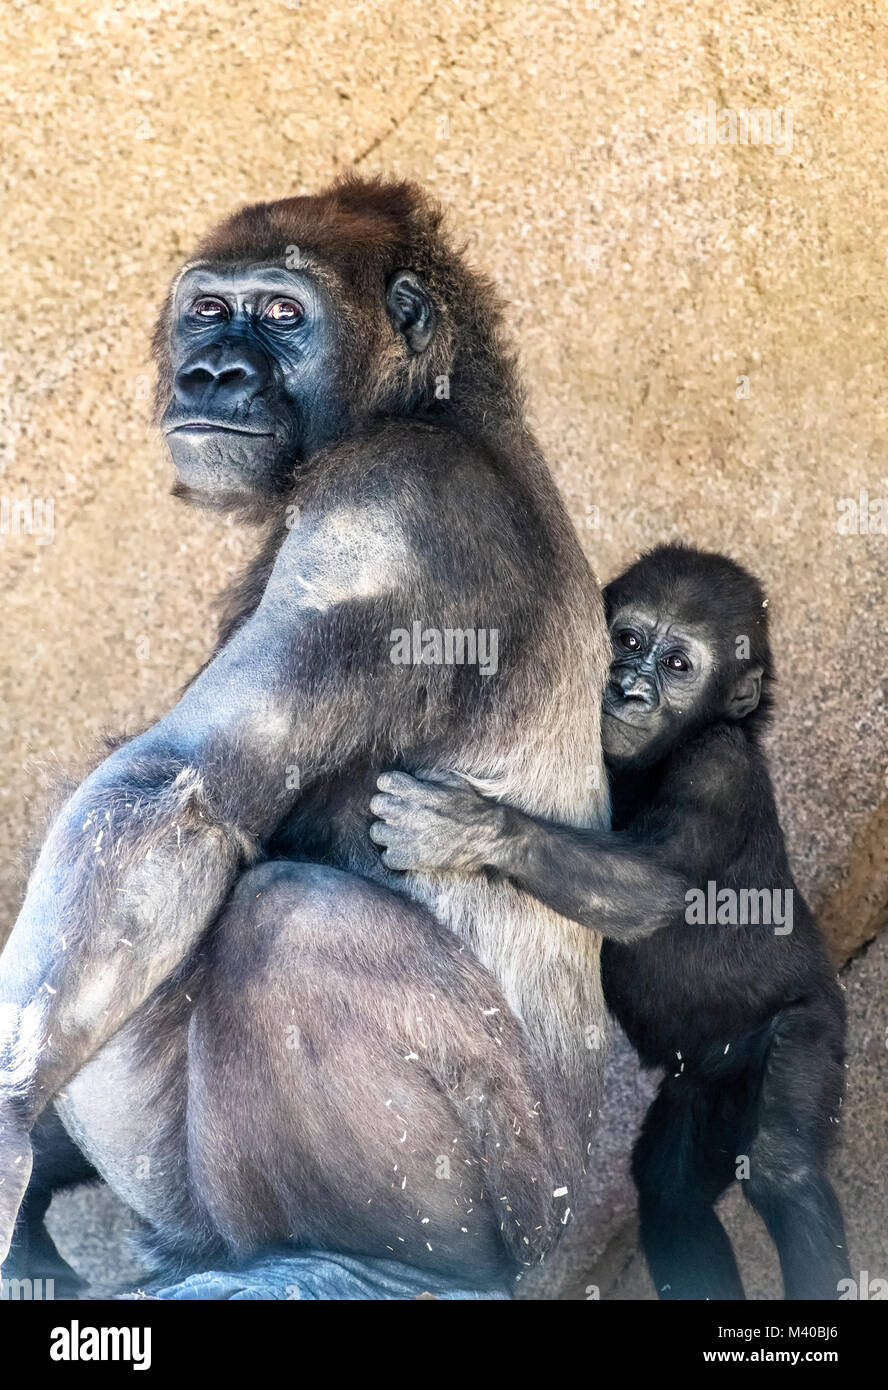 Una hembra de gorila silverback con su joven descendencia muestra el vínculo entre la madre y el bebé. Foto de stock